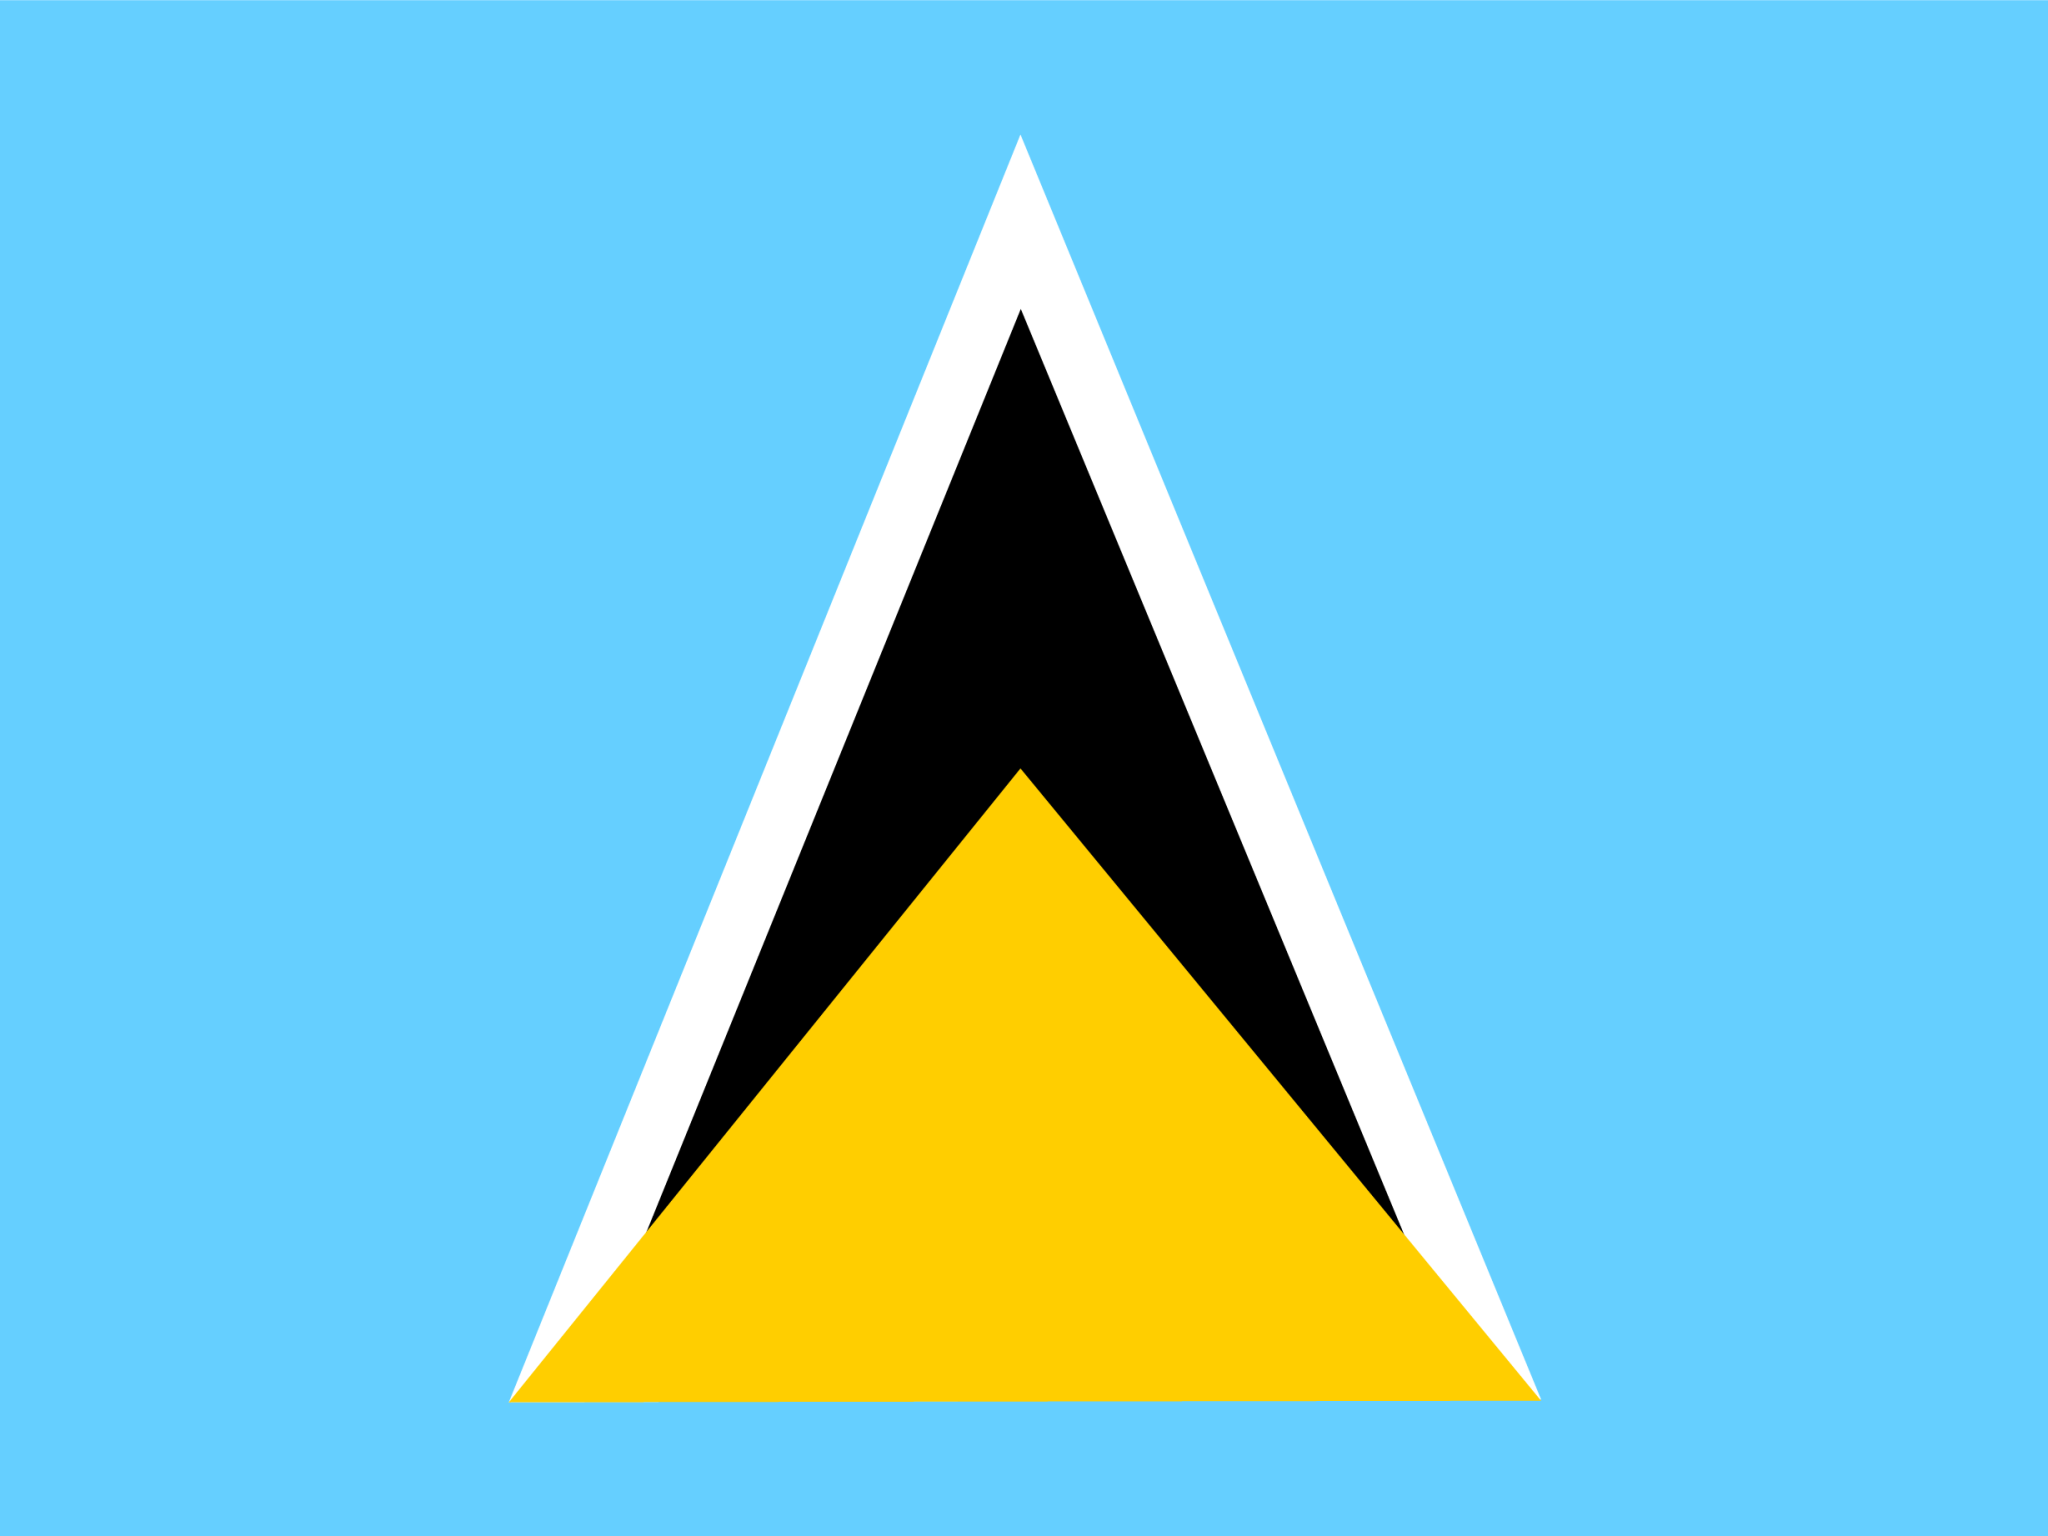 Saint Lucia icon